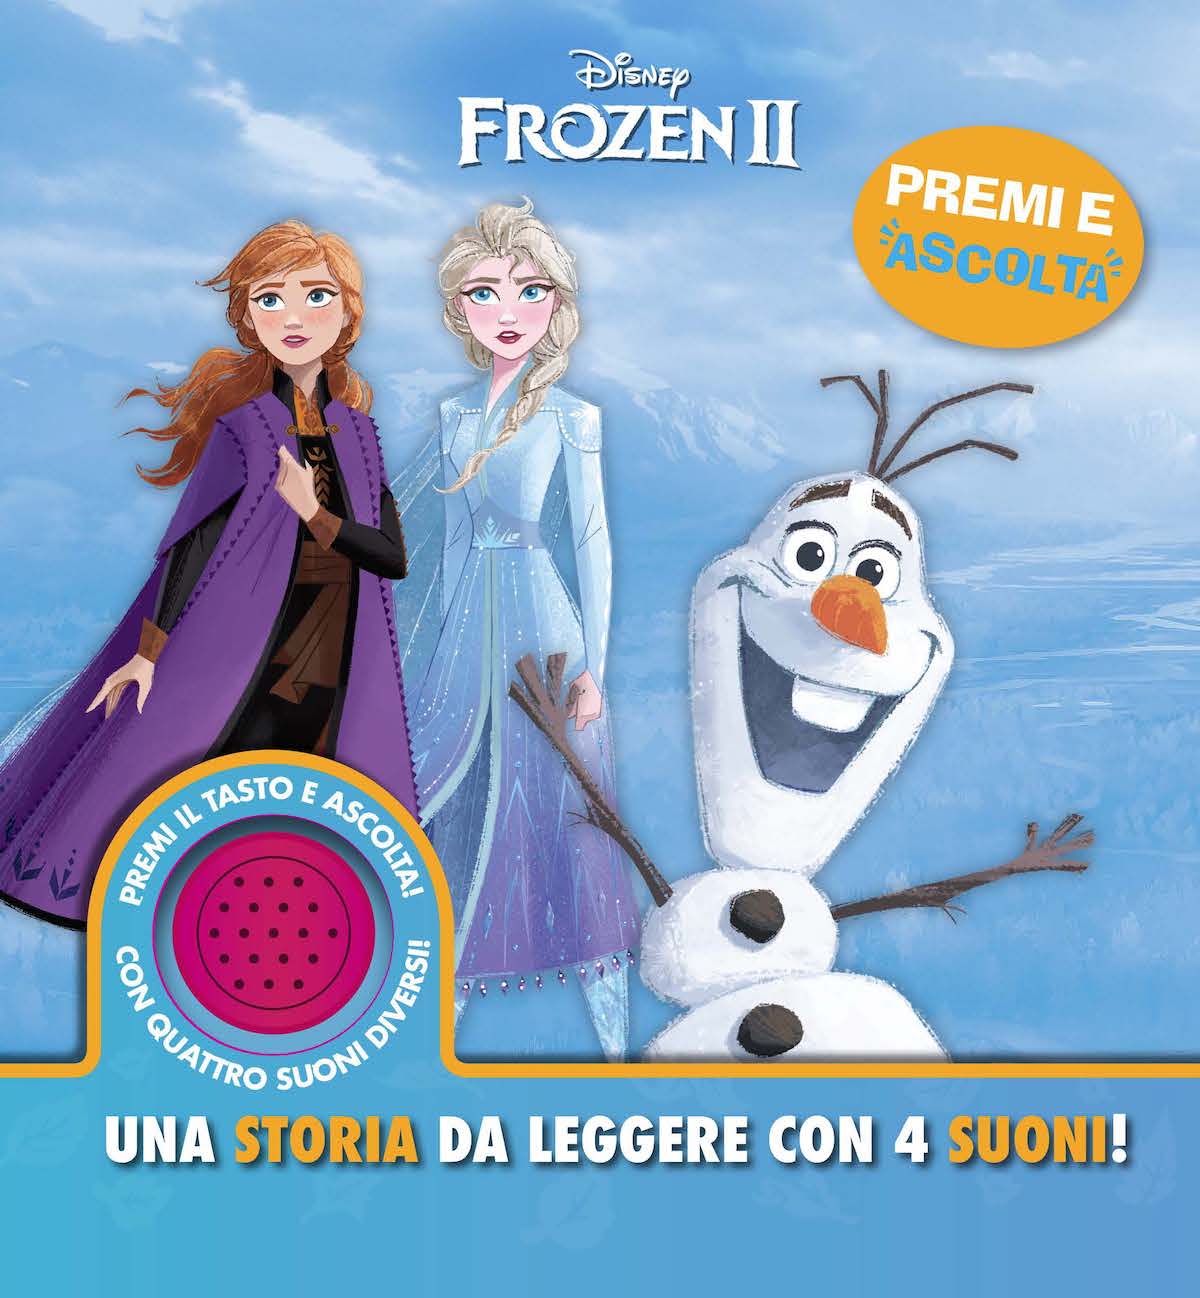 Frozen I lIbrottini: libro di Walt Disney